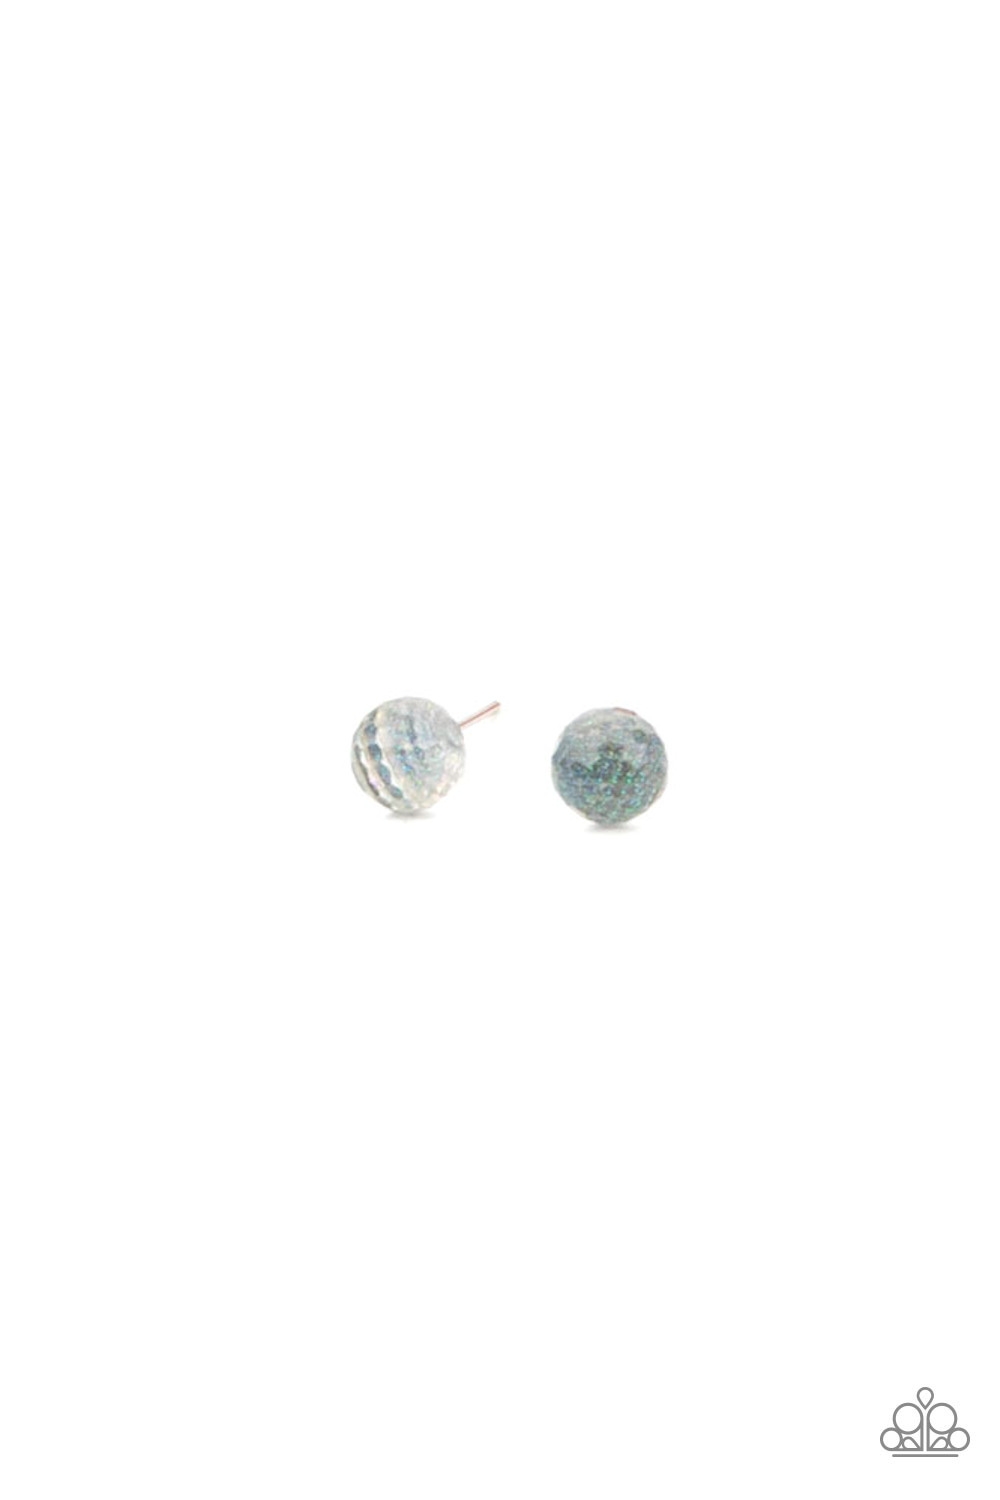 Earring - Starlet Shimmer Iridescent Bead - White